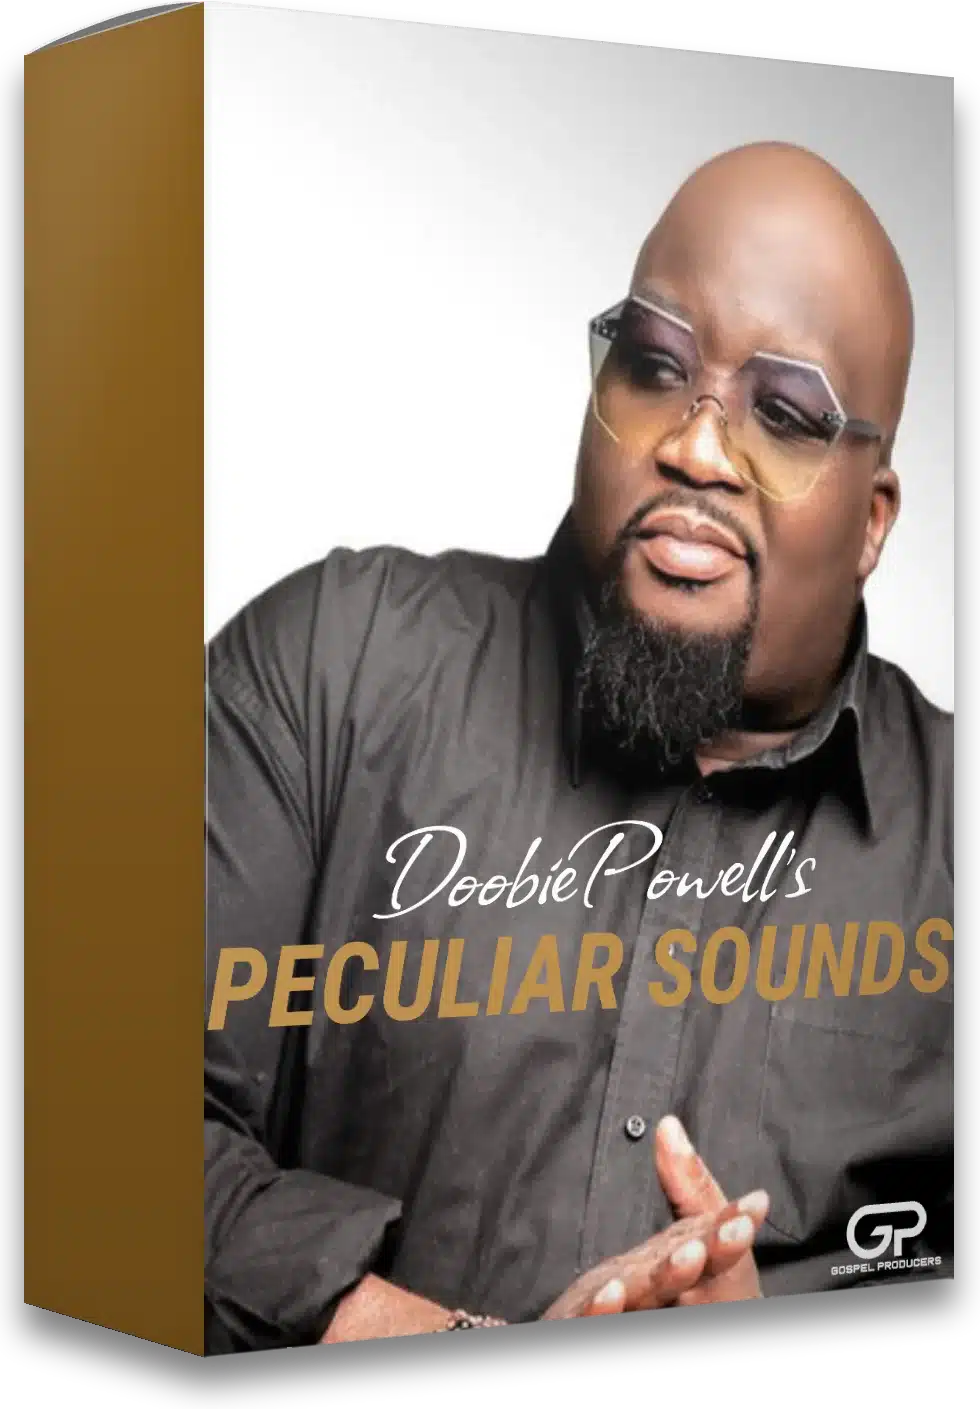 67% off “Doobie Powell’s Peculiar Sounds VST/AU/AAX Plugin” by Gospel Producers